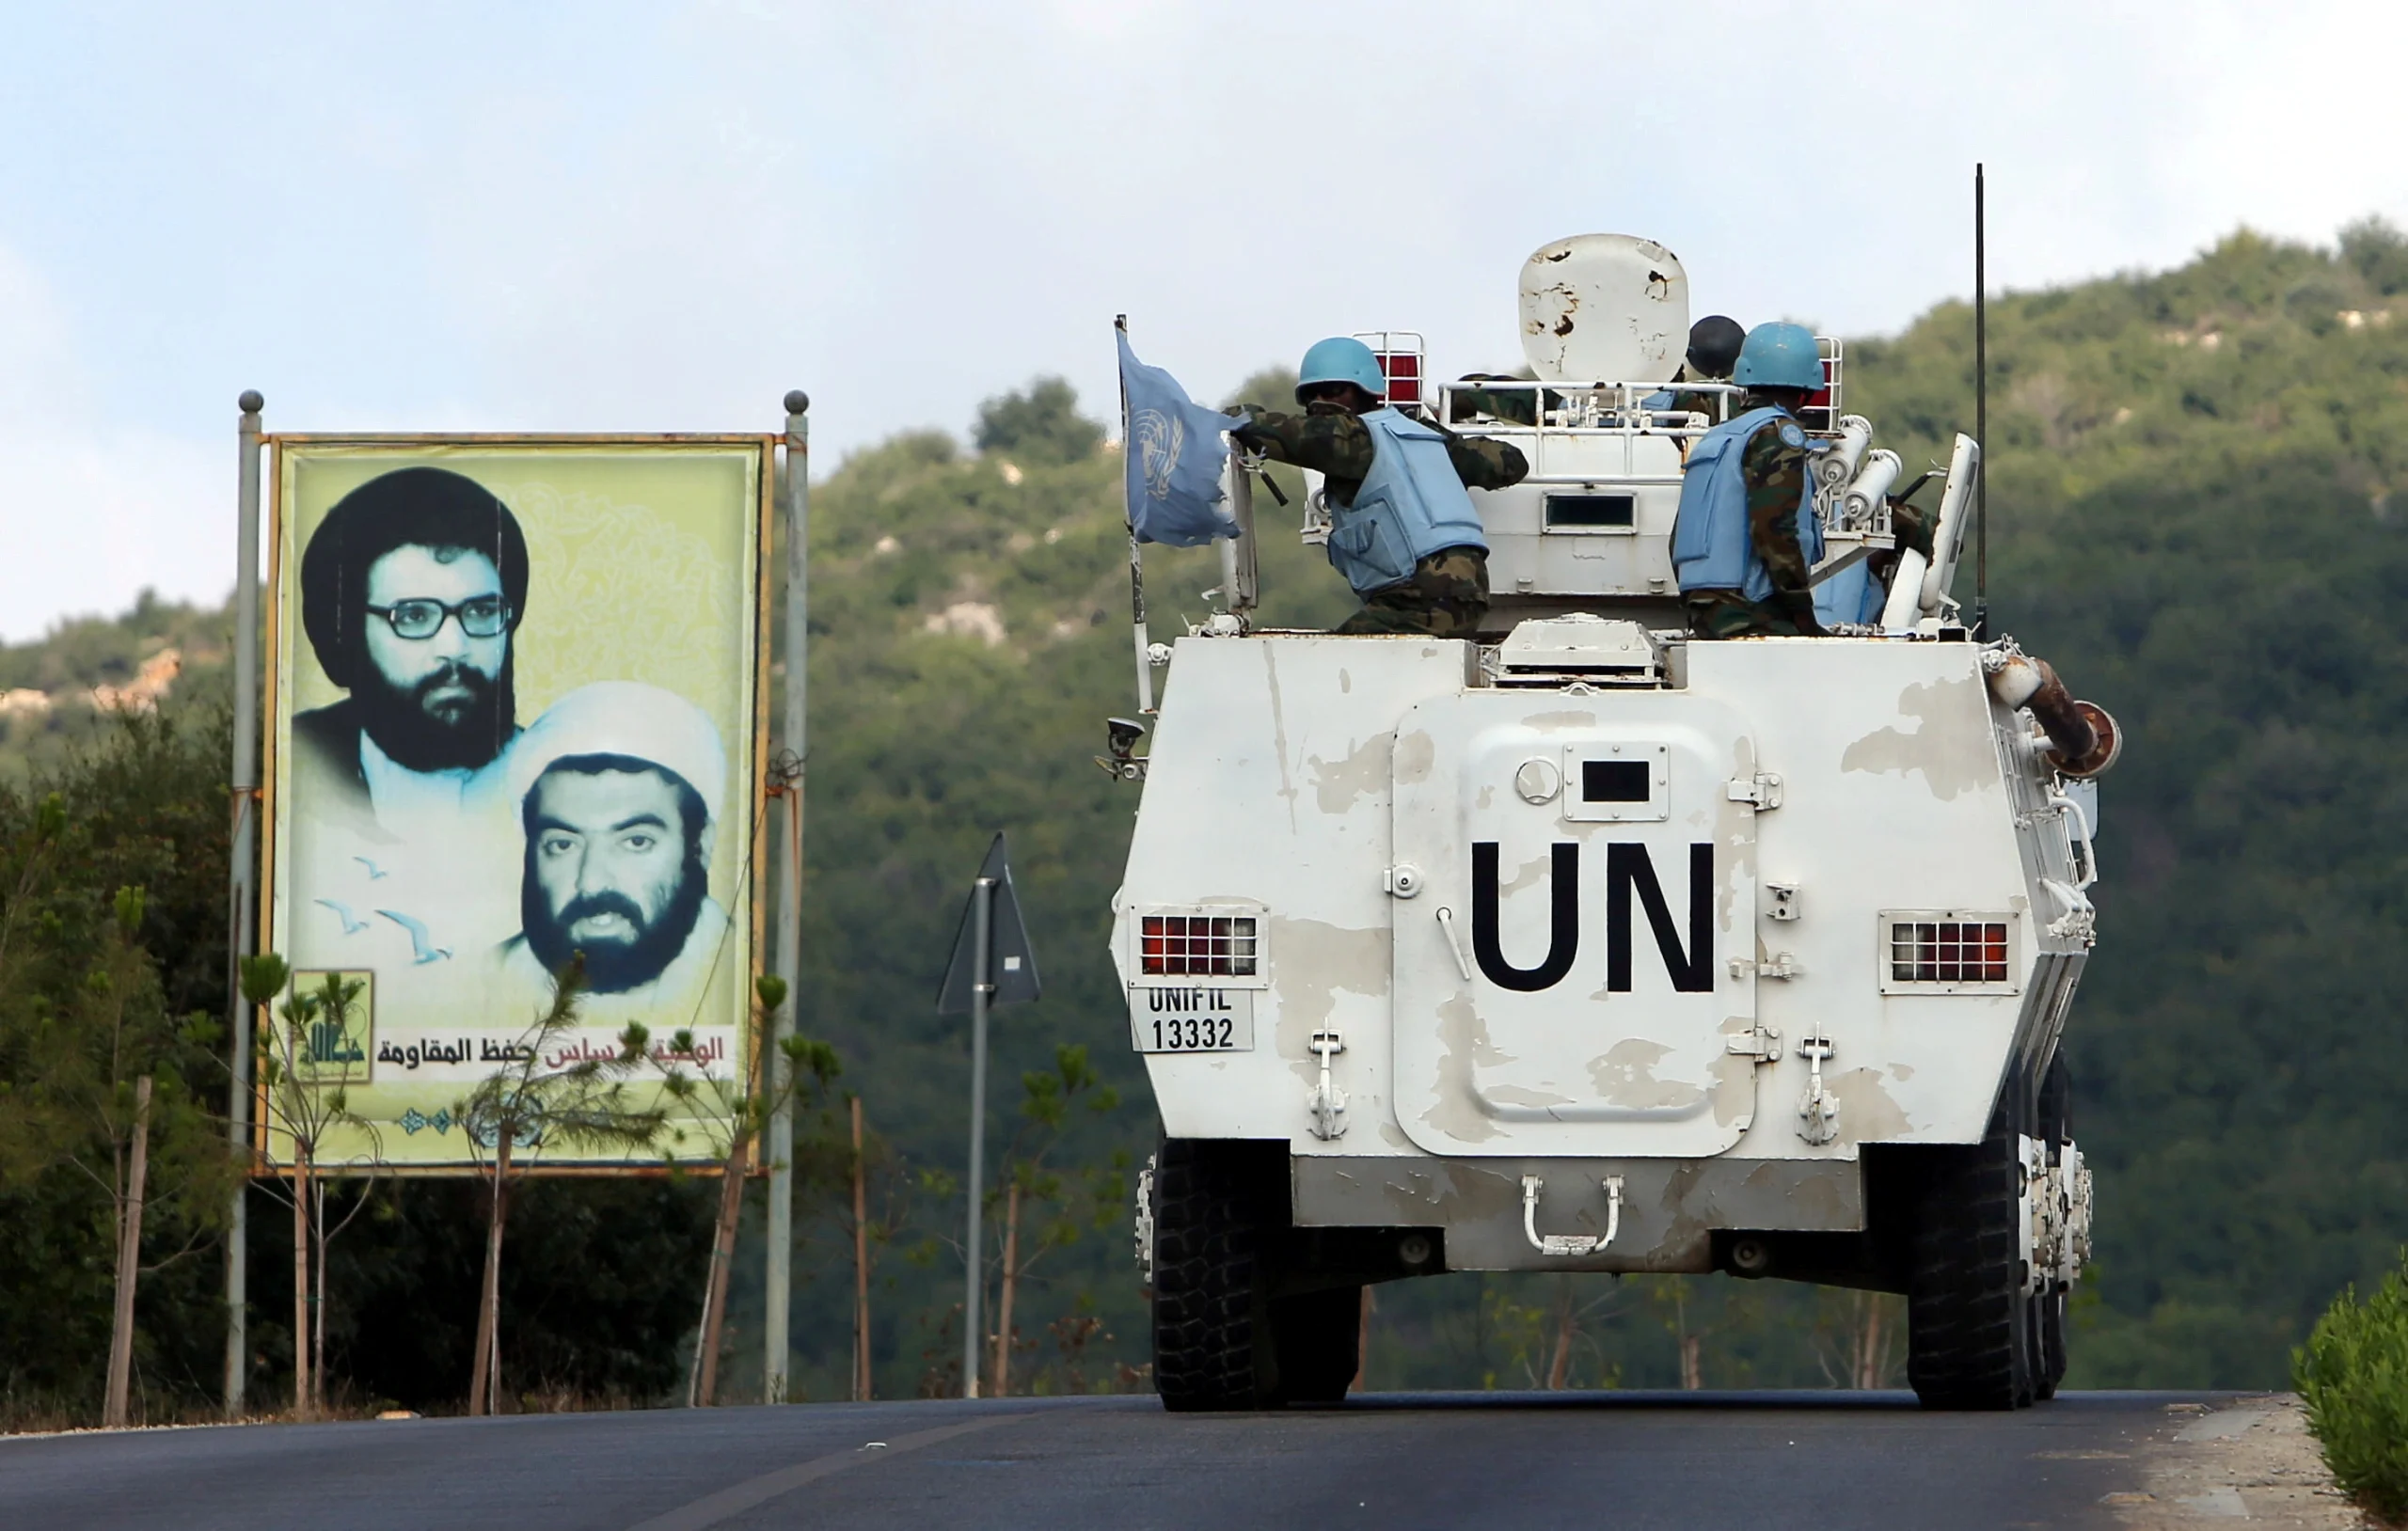 UN in Lebanon